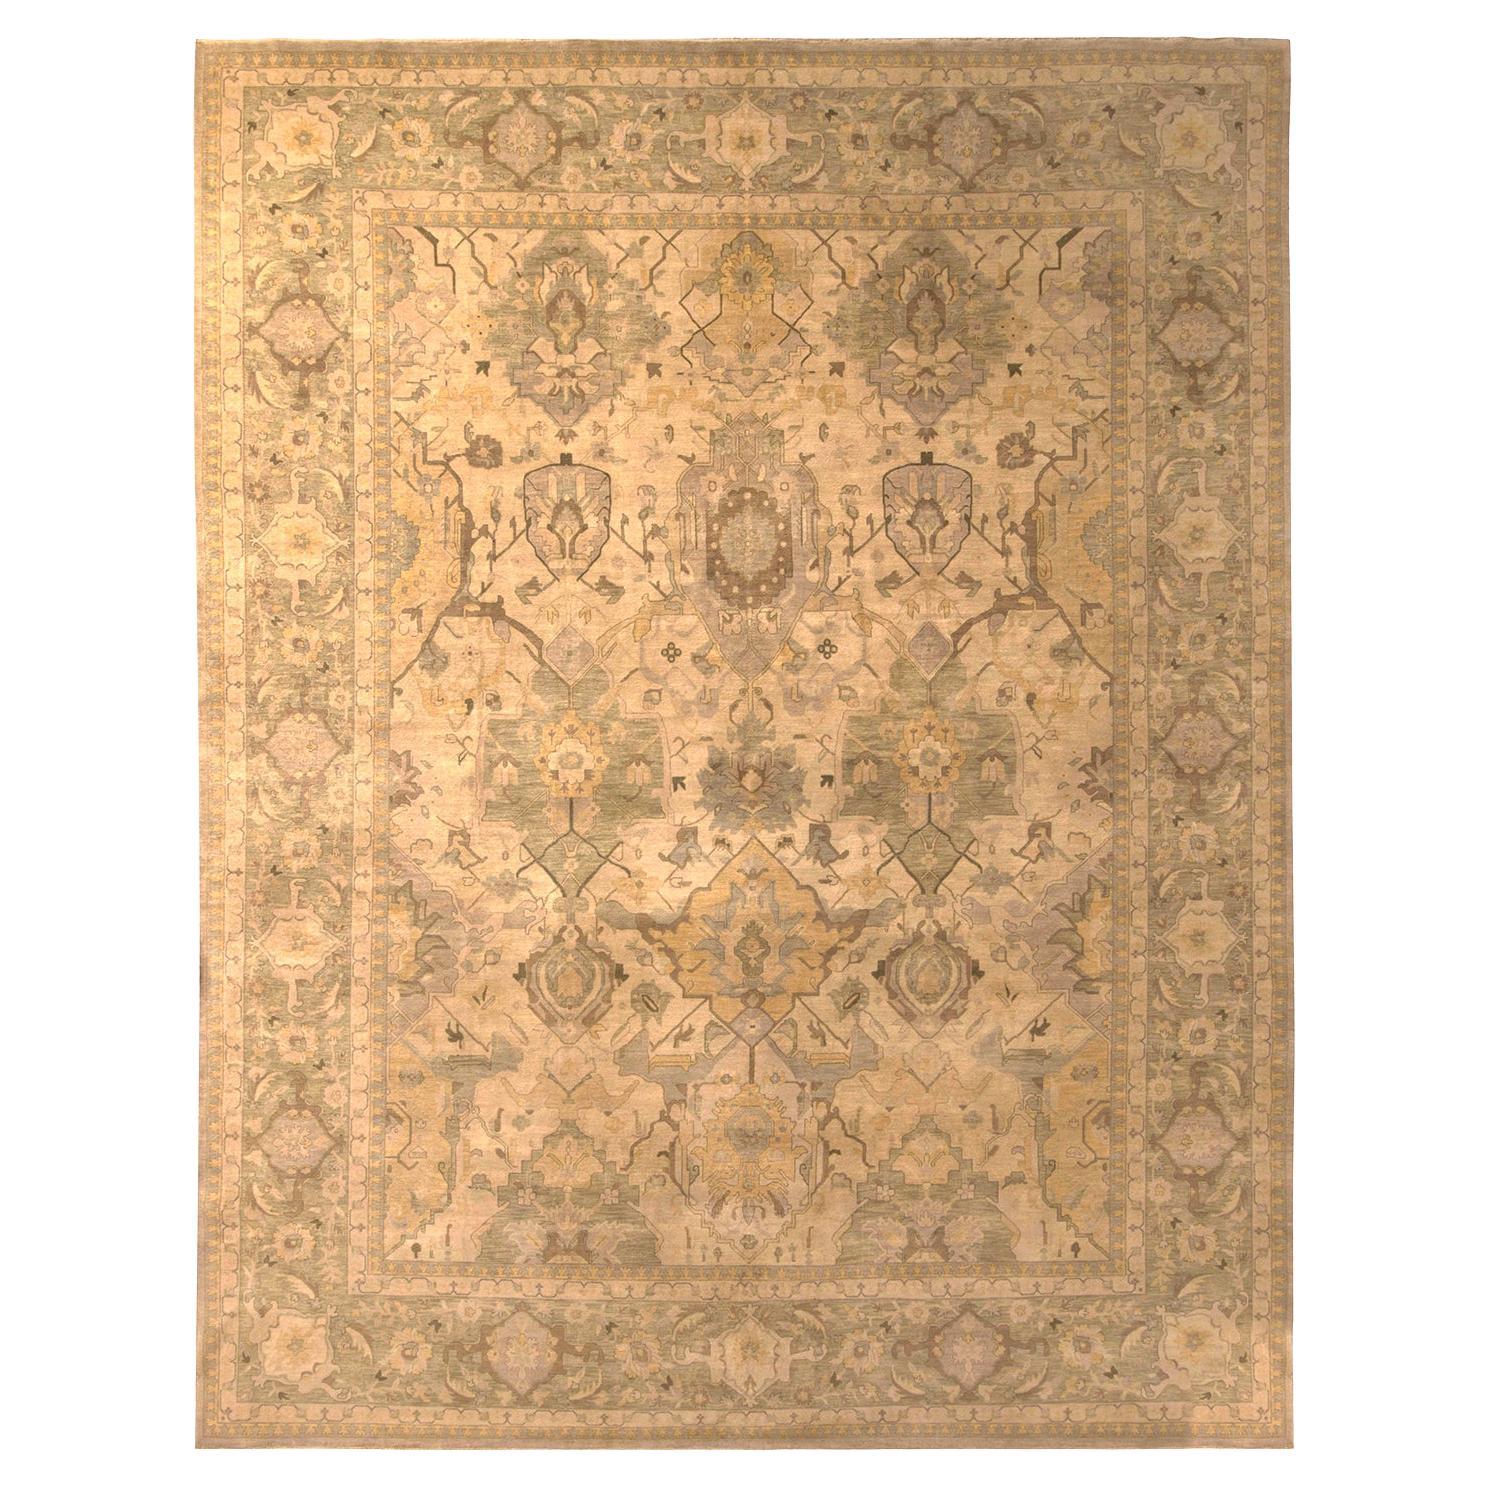 Teppich & Kelim-Teppich im klassischen Stil in Creme, Pastellgrün und Gold mit Blumenmuster